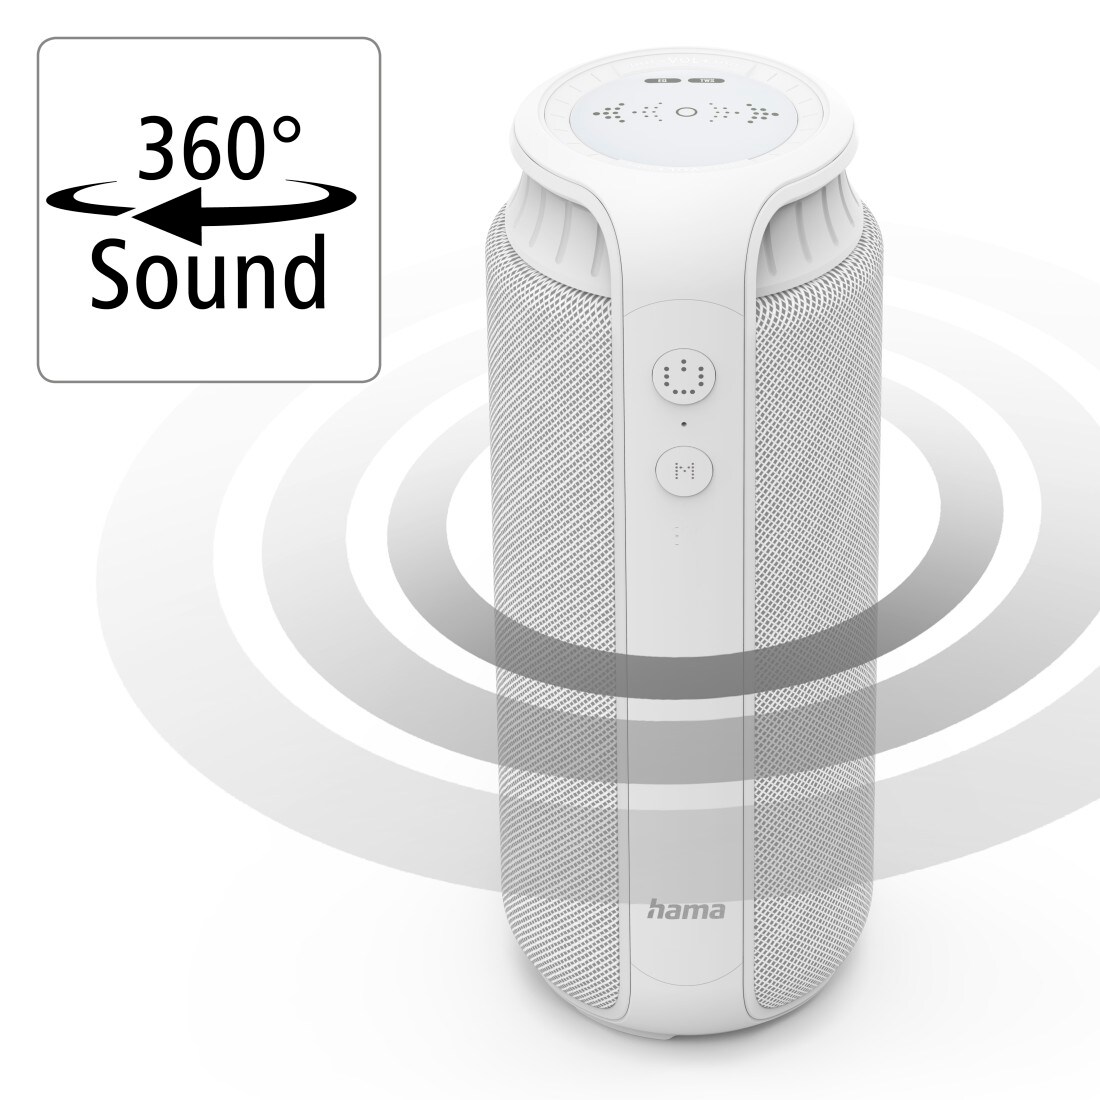 spritzwassergeschützt, 2.0, Weiß Pipe Hama Cyberport 24W, ++ Bluetooth-Lautsprecher